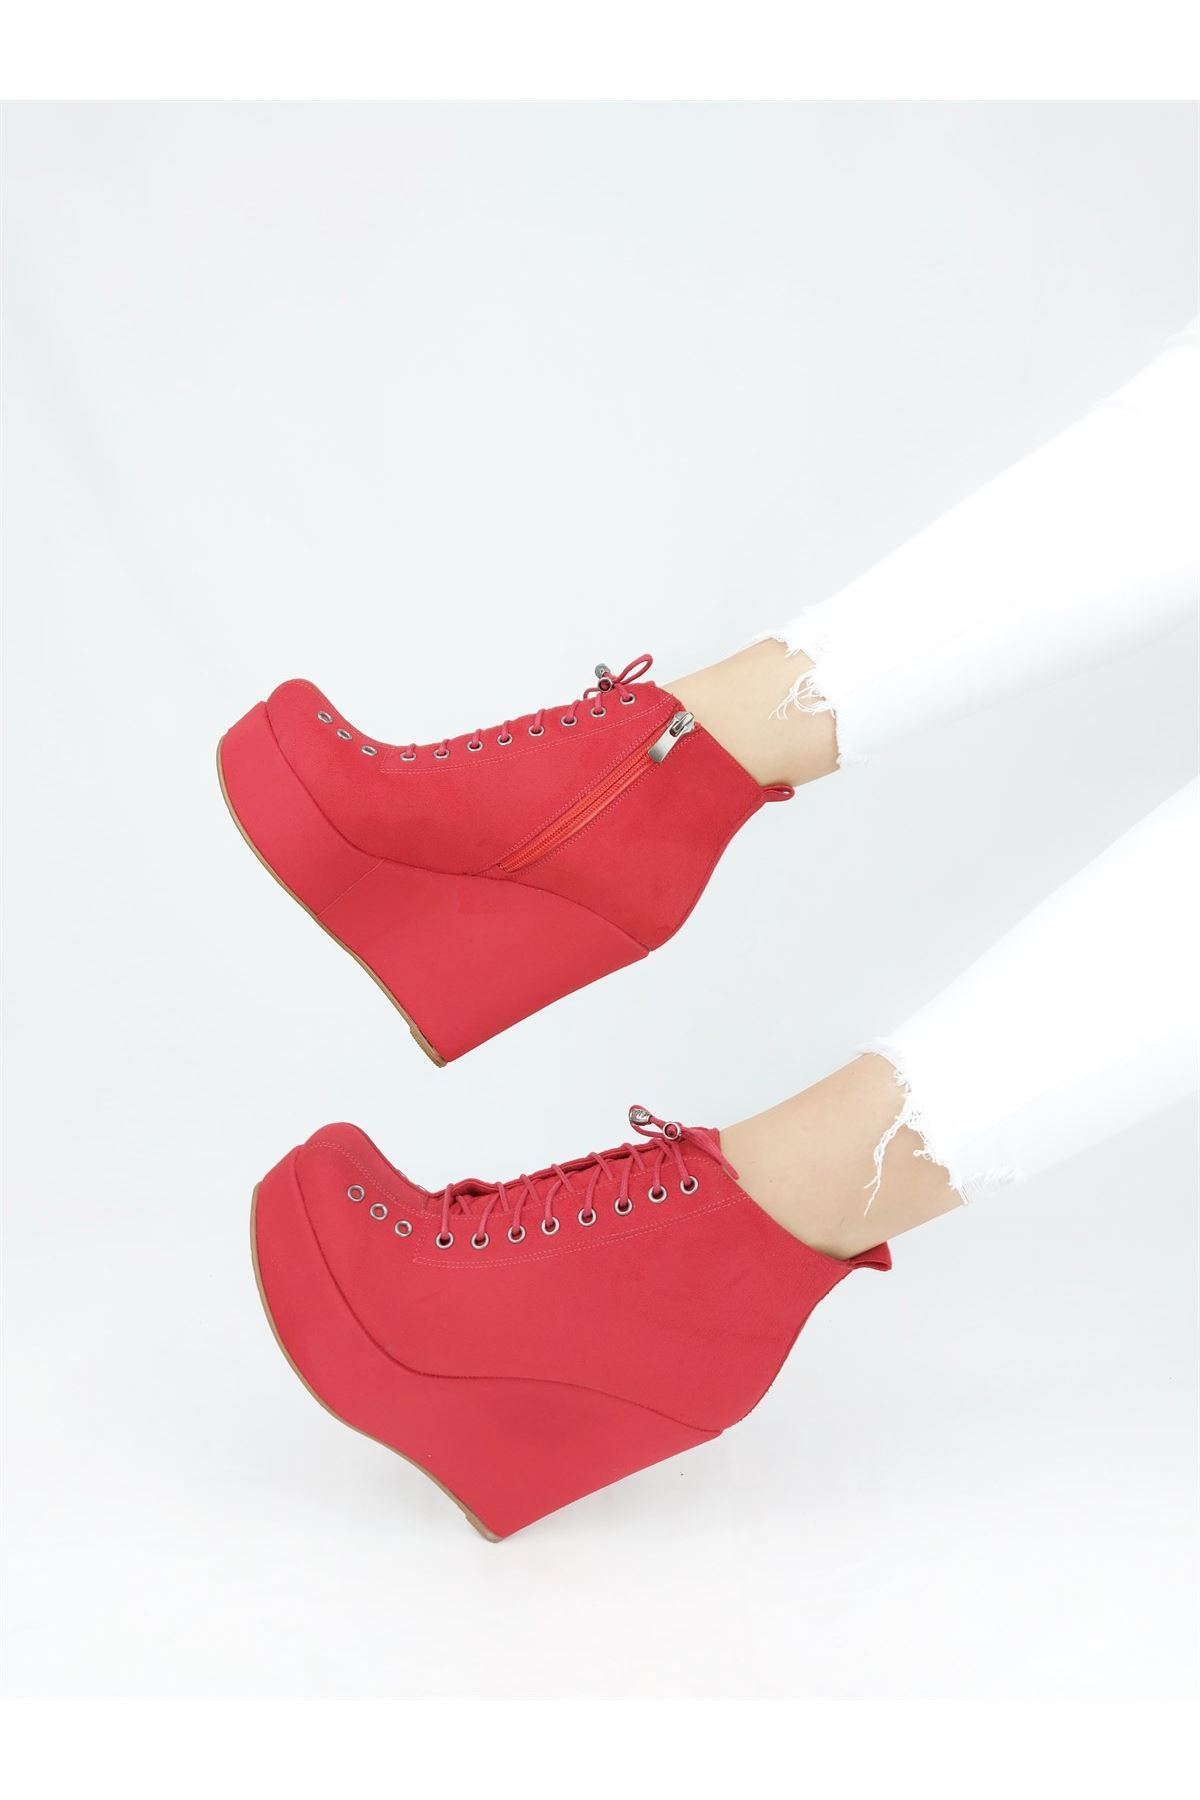 Lindy Kırmızı Süet Bağcıklı Dolgu Topuklu Ayakkabı